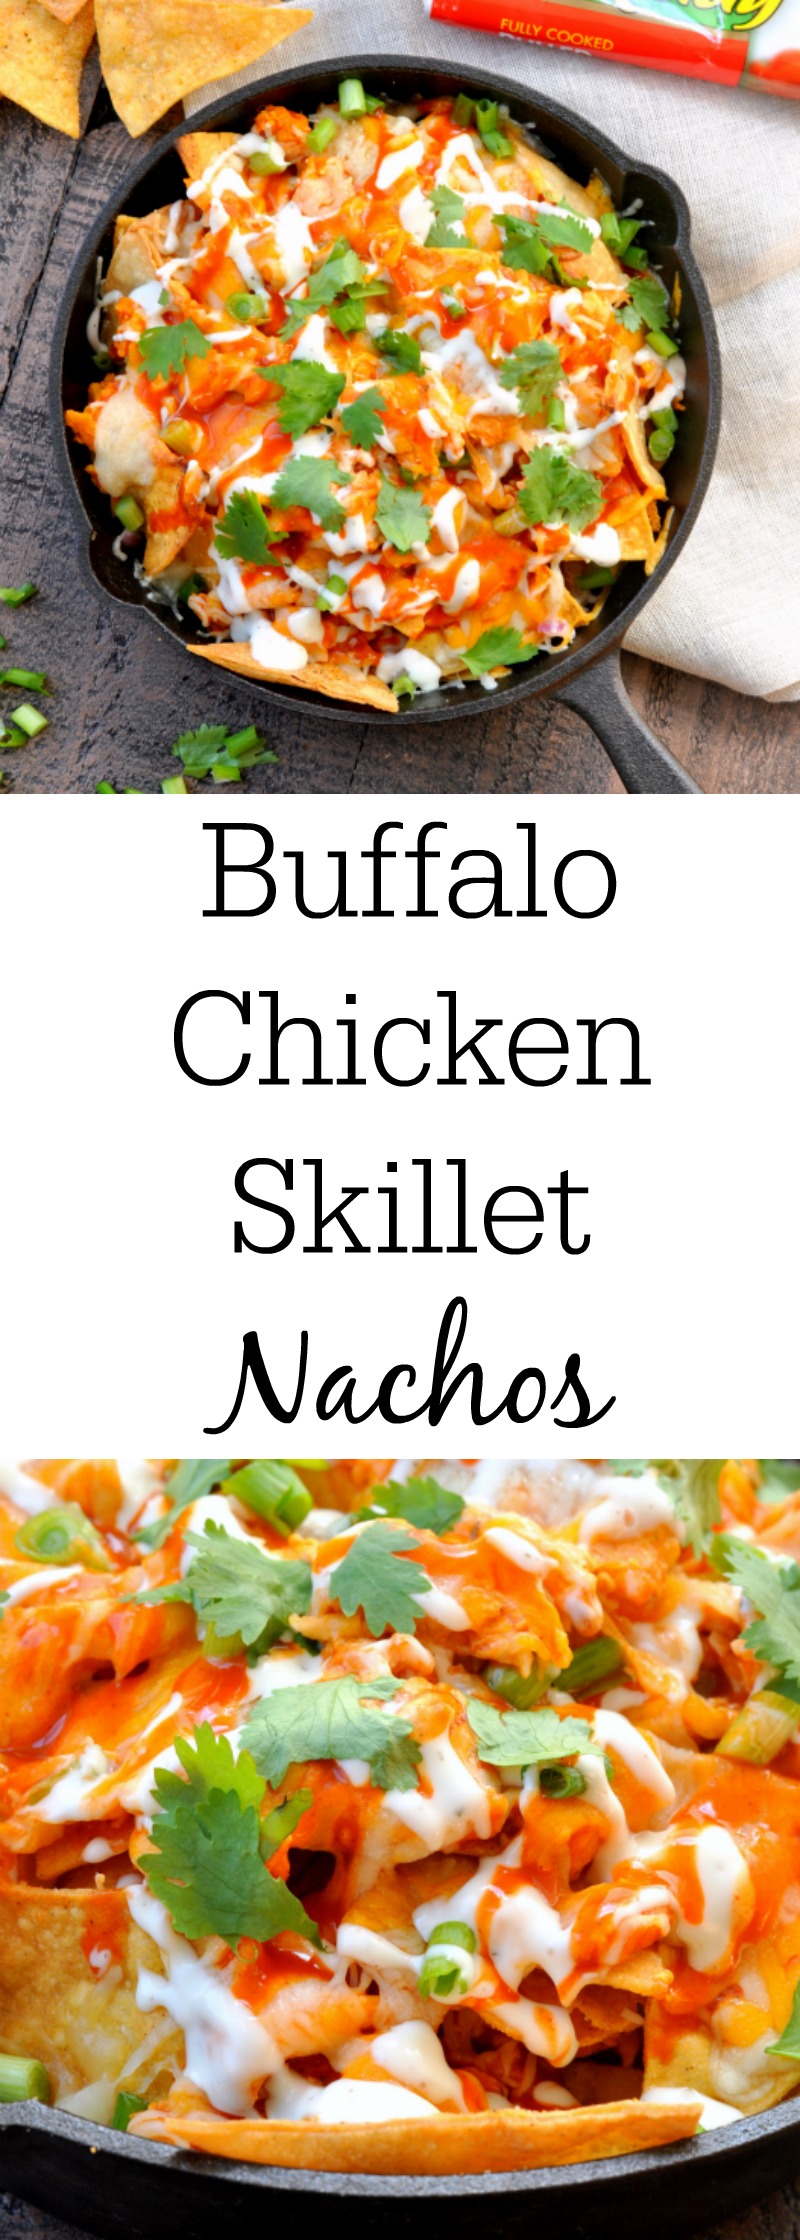 Buffalo Chicken Skillet Nachos